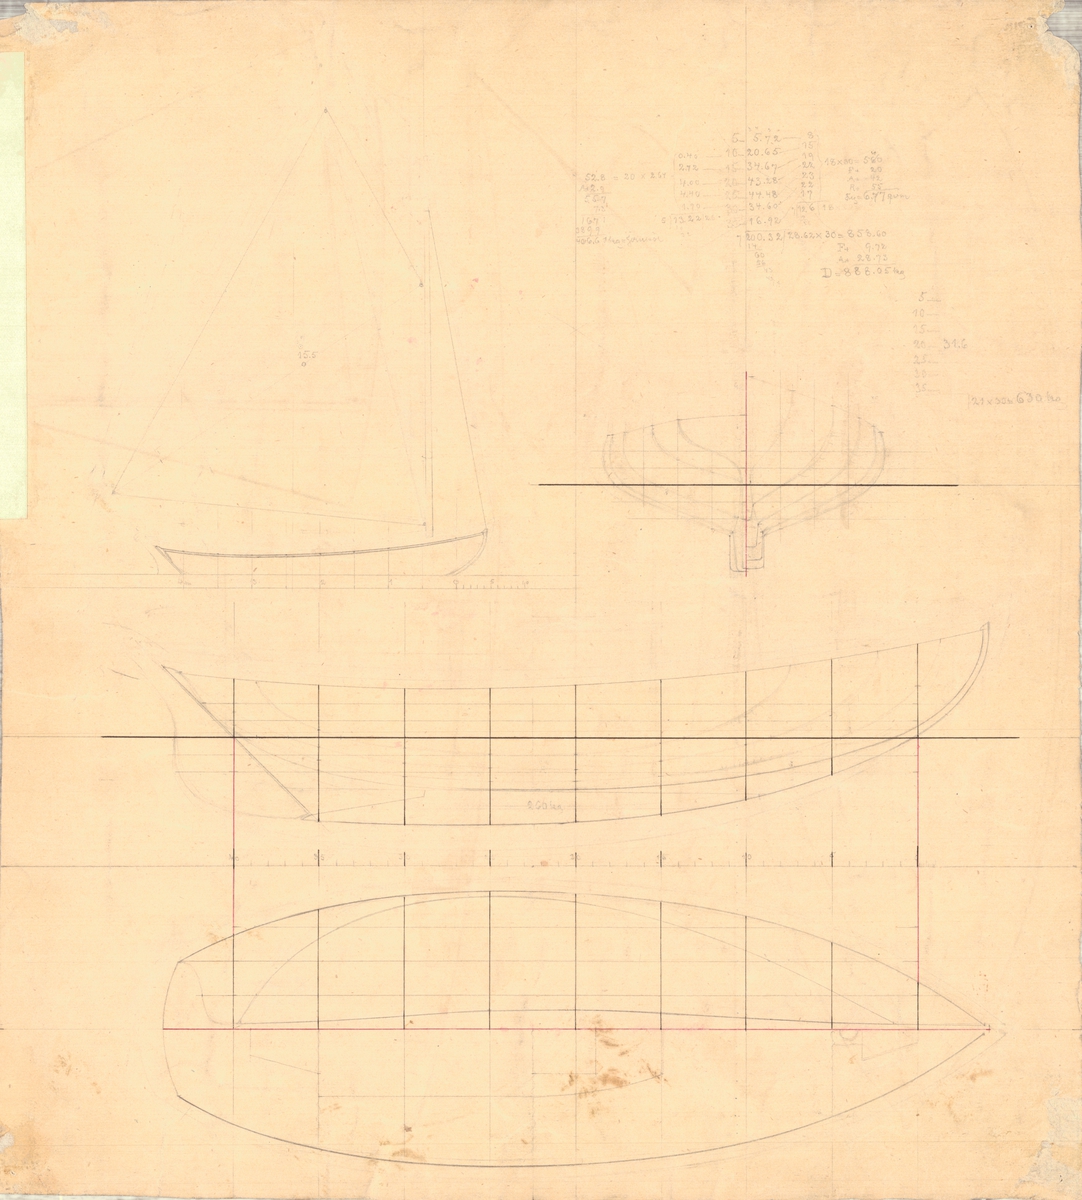 Enmastad segelbåt ritad av Carl Smith.
Spantruta, rigg-, profil- och linjeritning